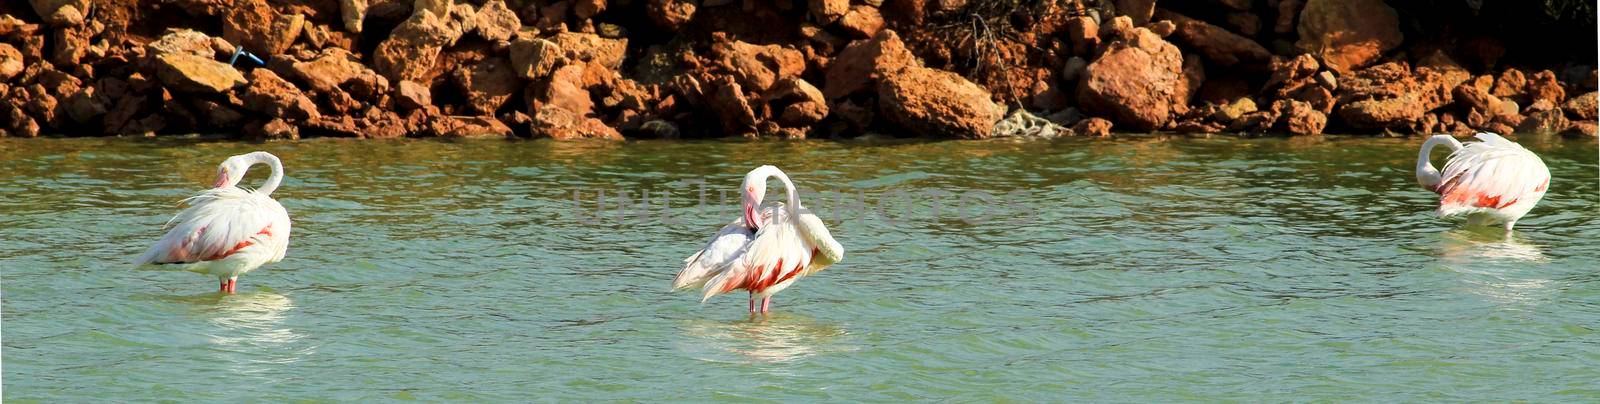 Flamingo in the Wetlands of San Pedro del Pinatar by soniabonet